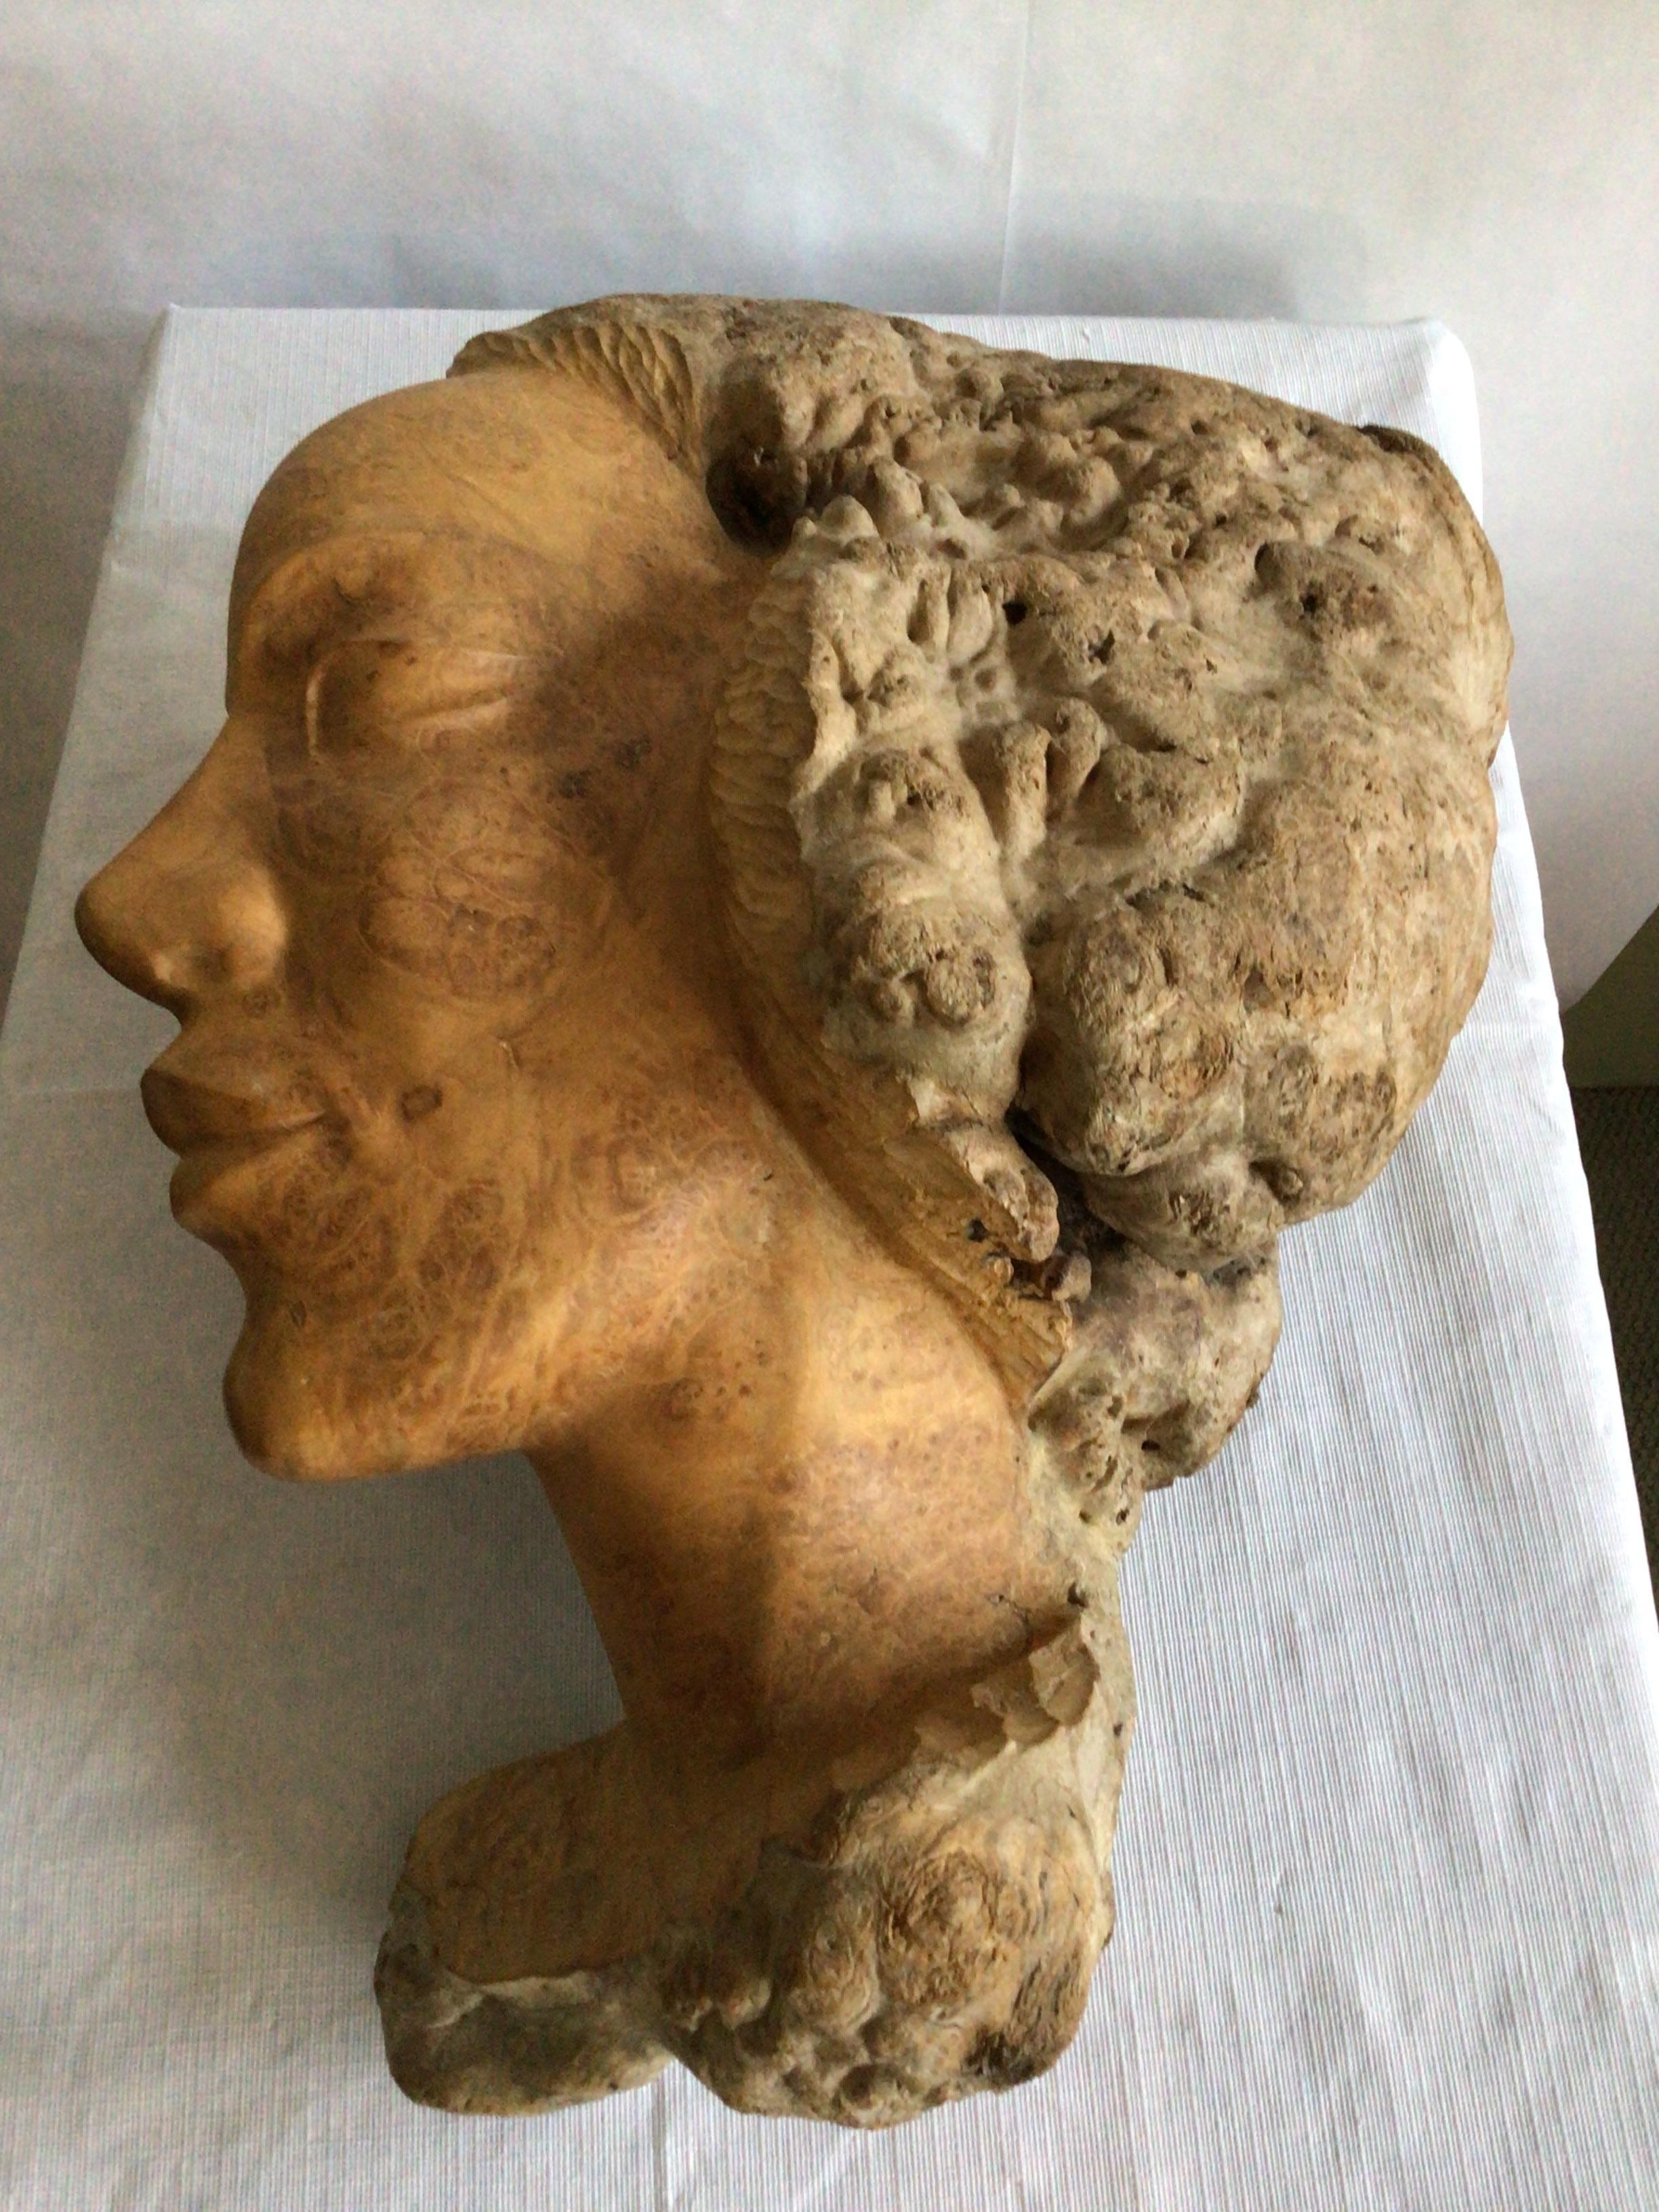 Sculpture en Wood Wood des années 1960 représentant un visage de femme
Les tons chauds du bois de ronce naturel ajoutent de la texture et de l'intérêt à cette sculpture sculptée à la main.
Naturel et raffiné à la fois 
Petit éclat dans la loupe